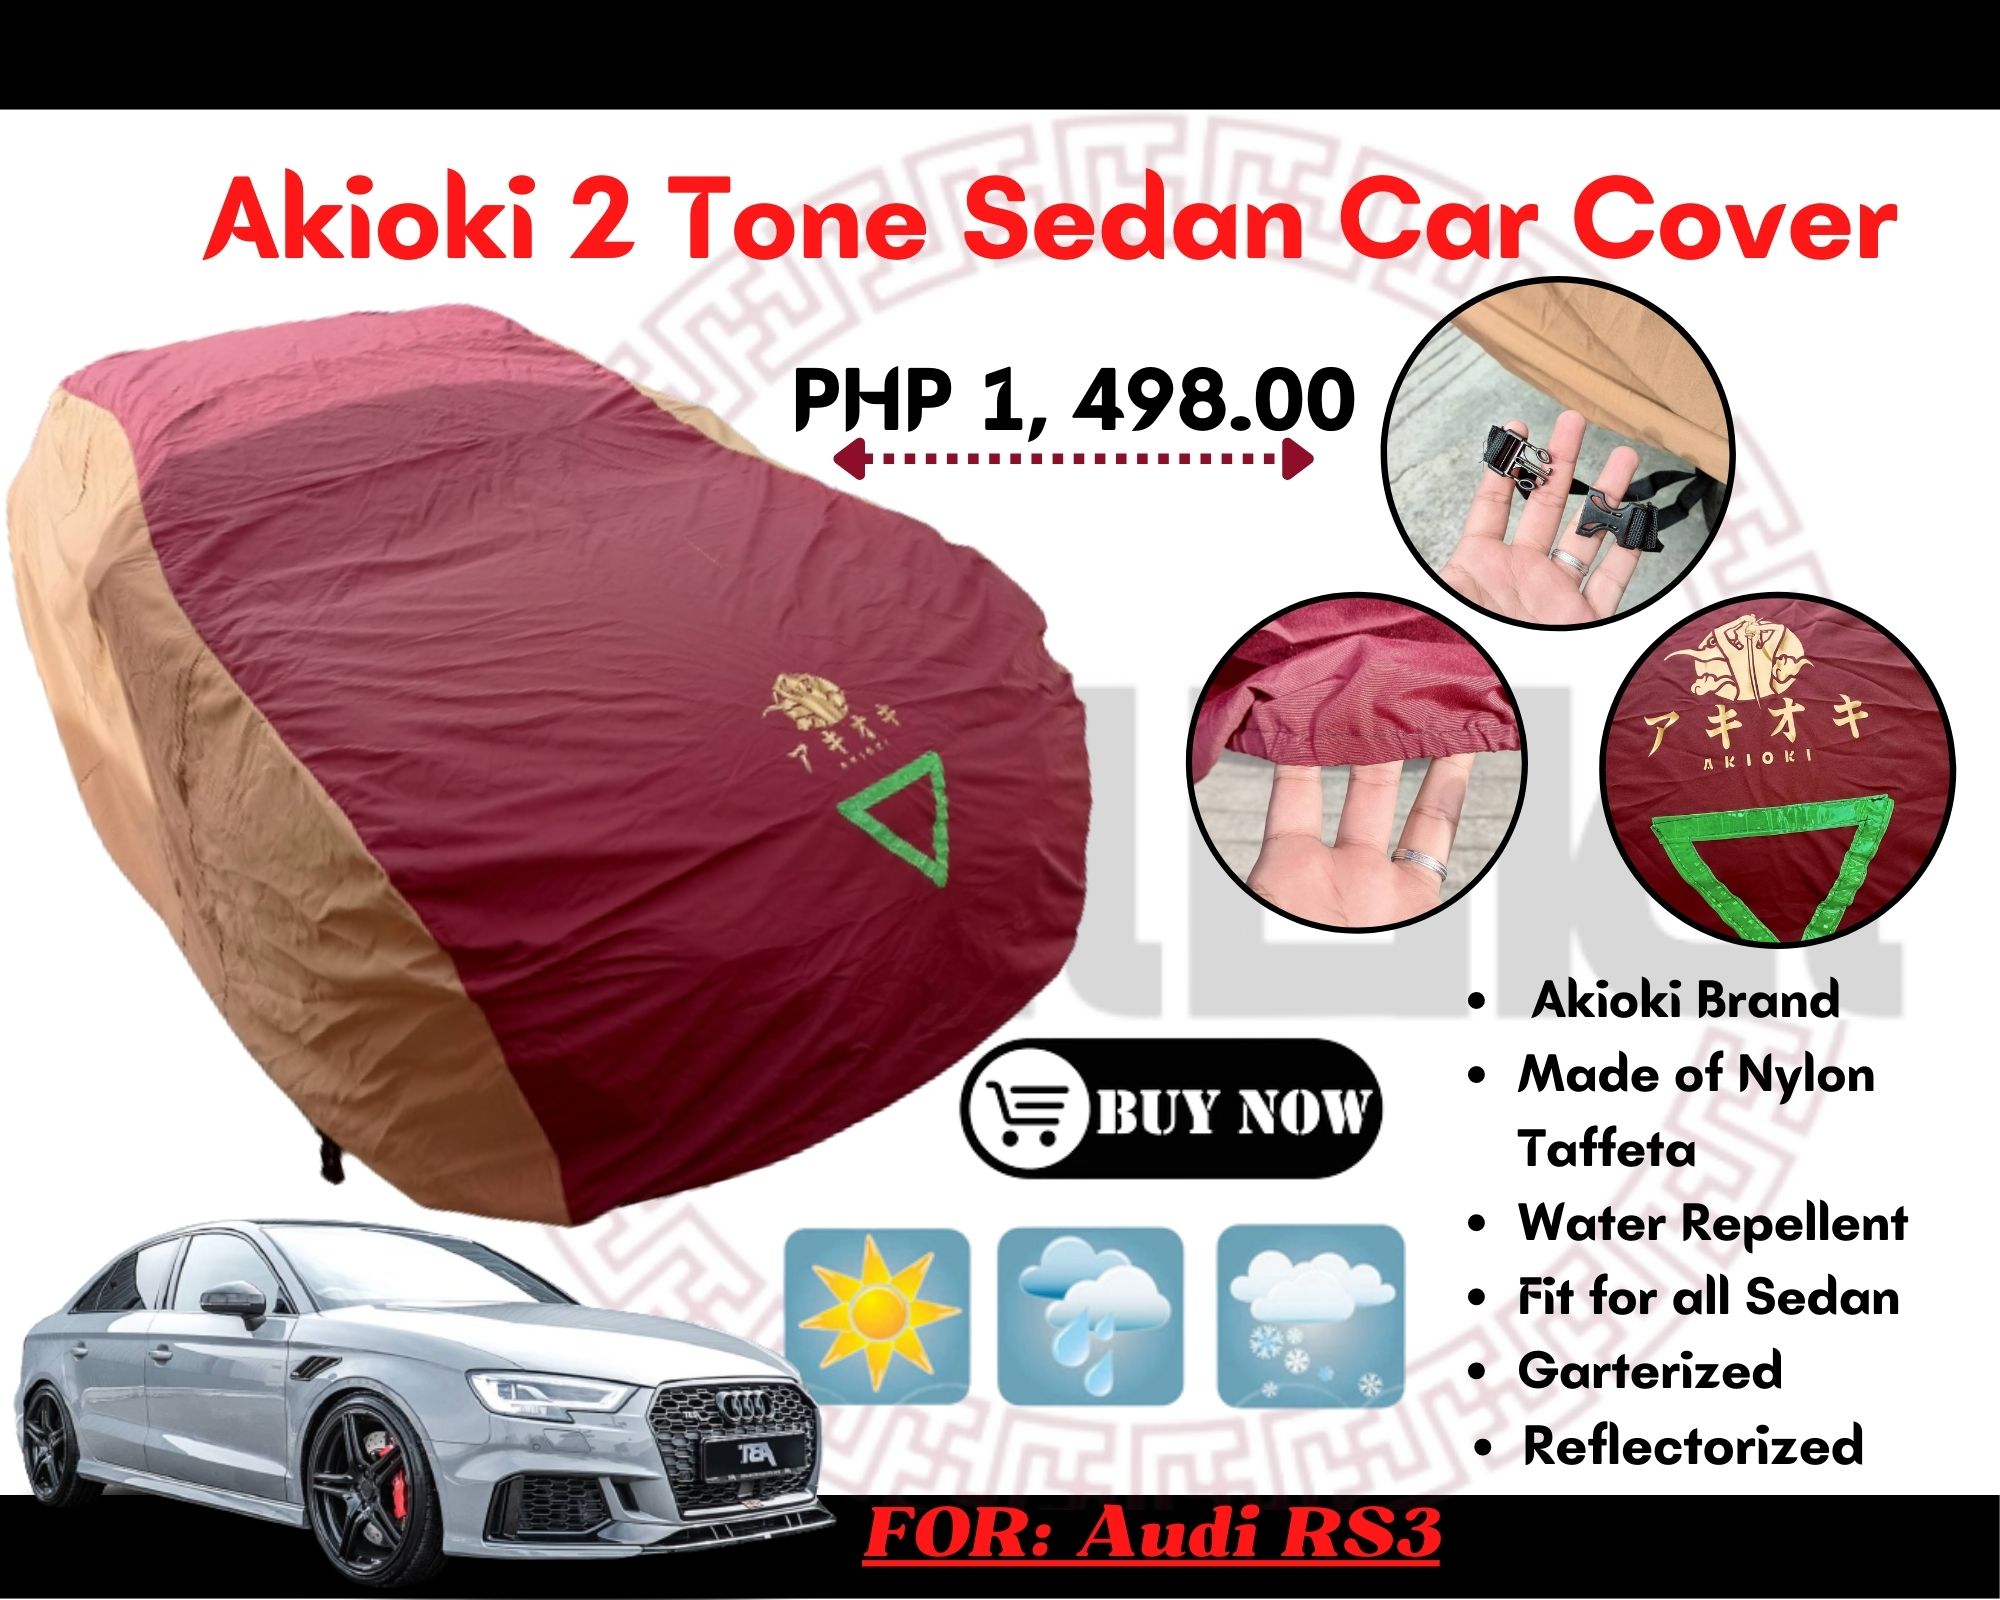 AKIOKI SEDAN CAR COVER FOR Audi RS3, WATERPROOF